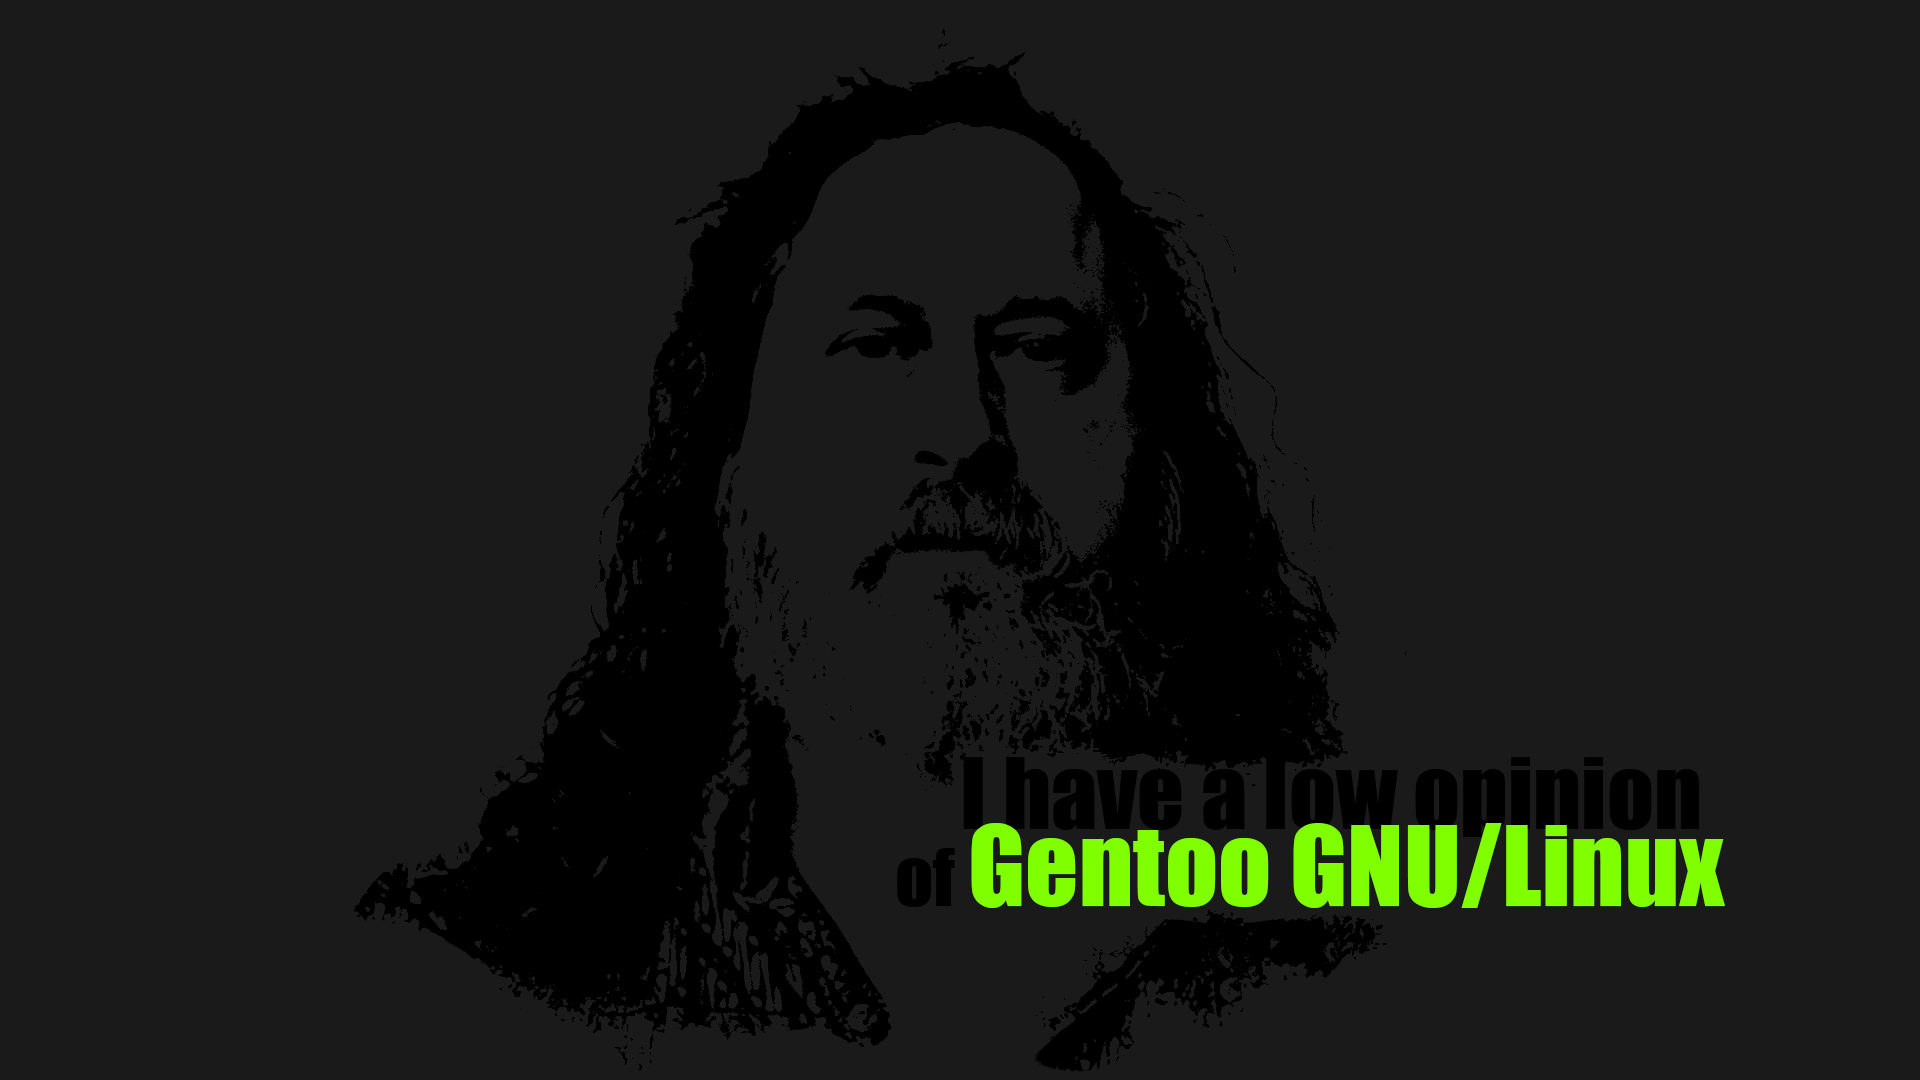 I made a minimalist Gentoo Linux wallpaper 1920x1080